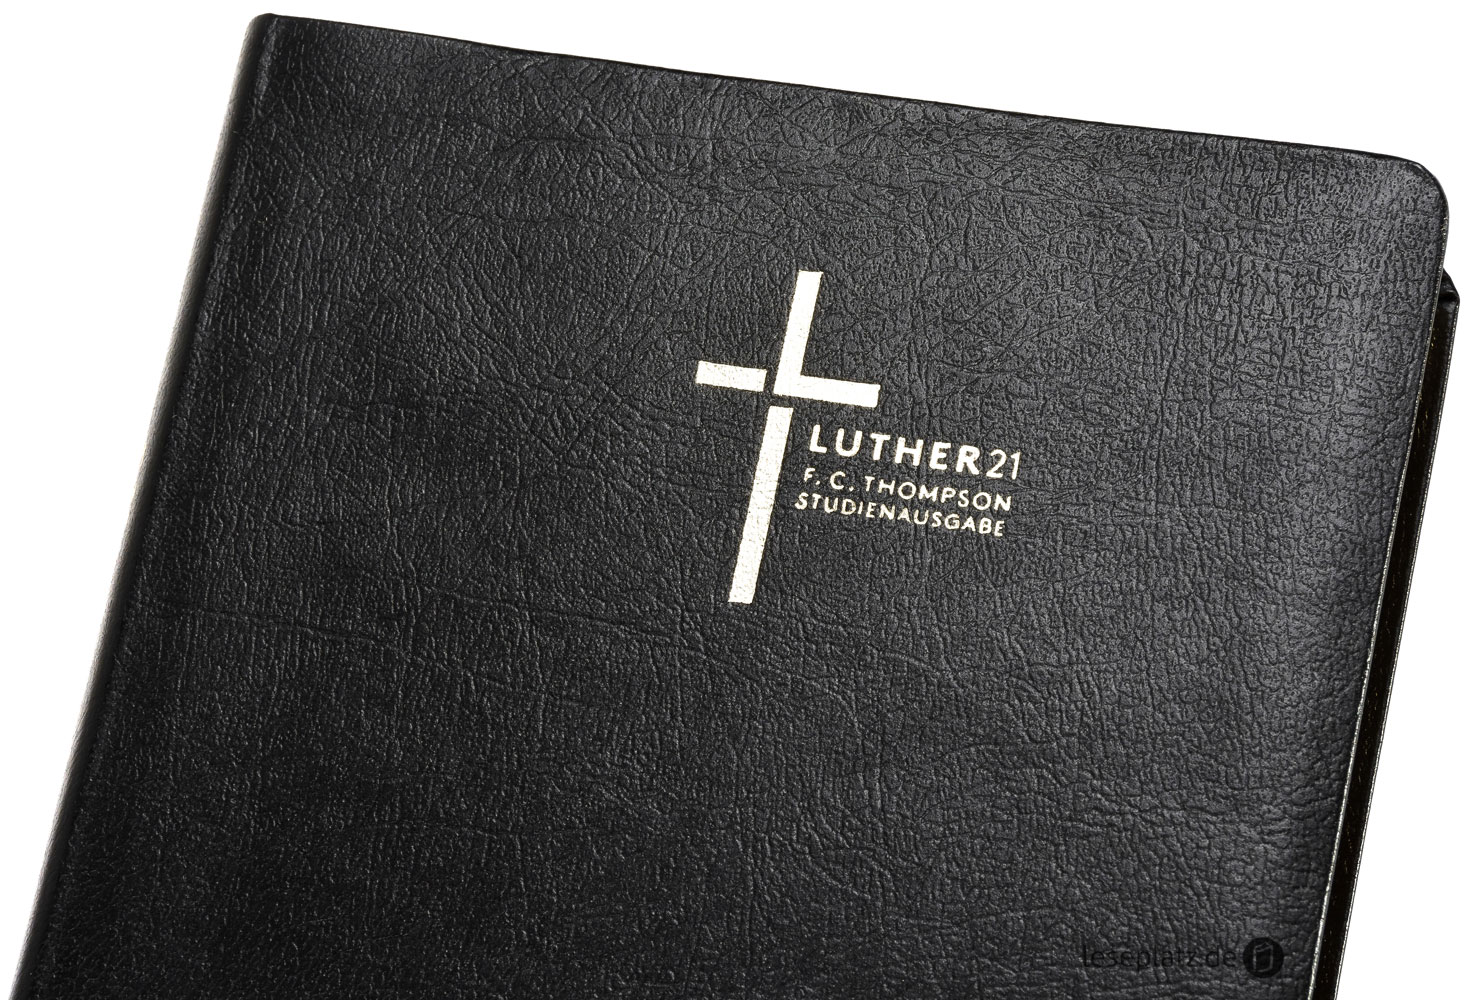 Luther21 - F.C.Thompson Studienausgabe - Großdruck - Lederfaserstoff schwarz